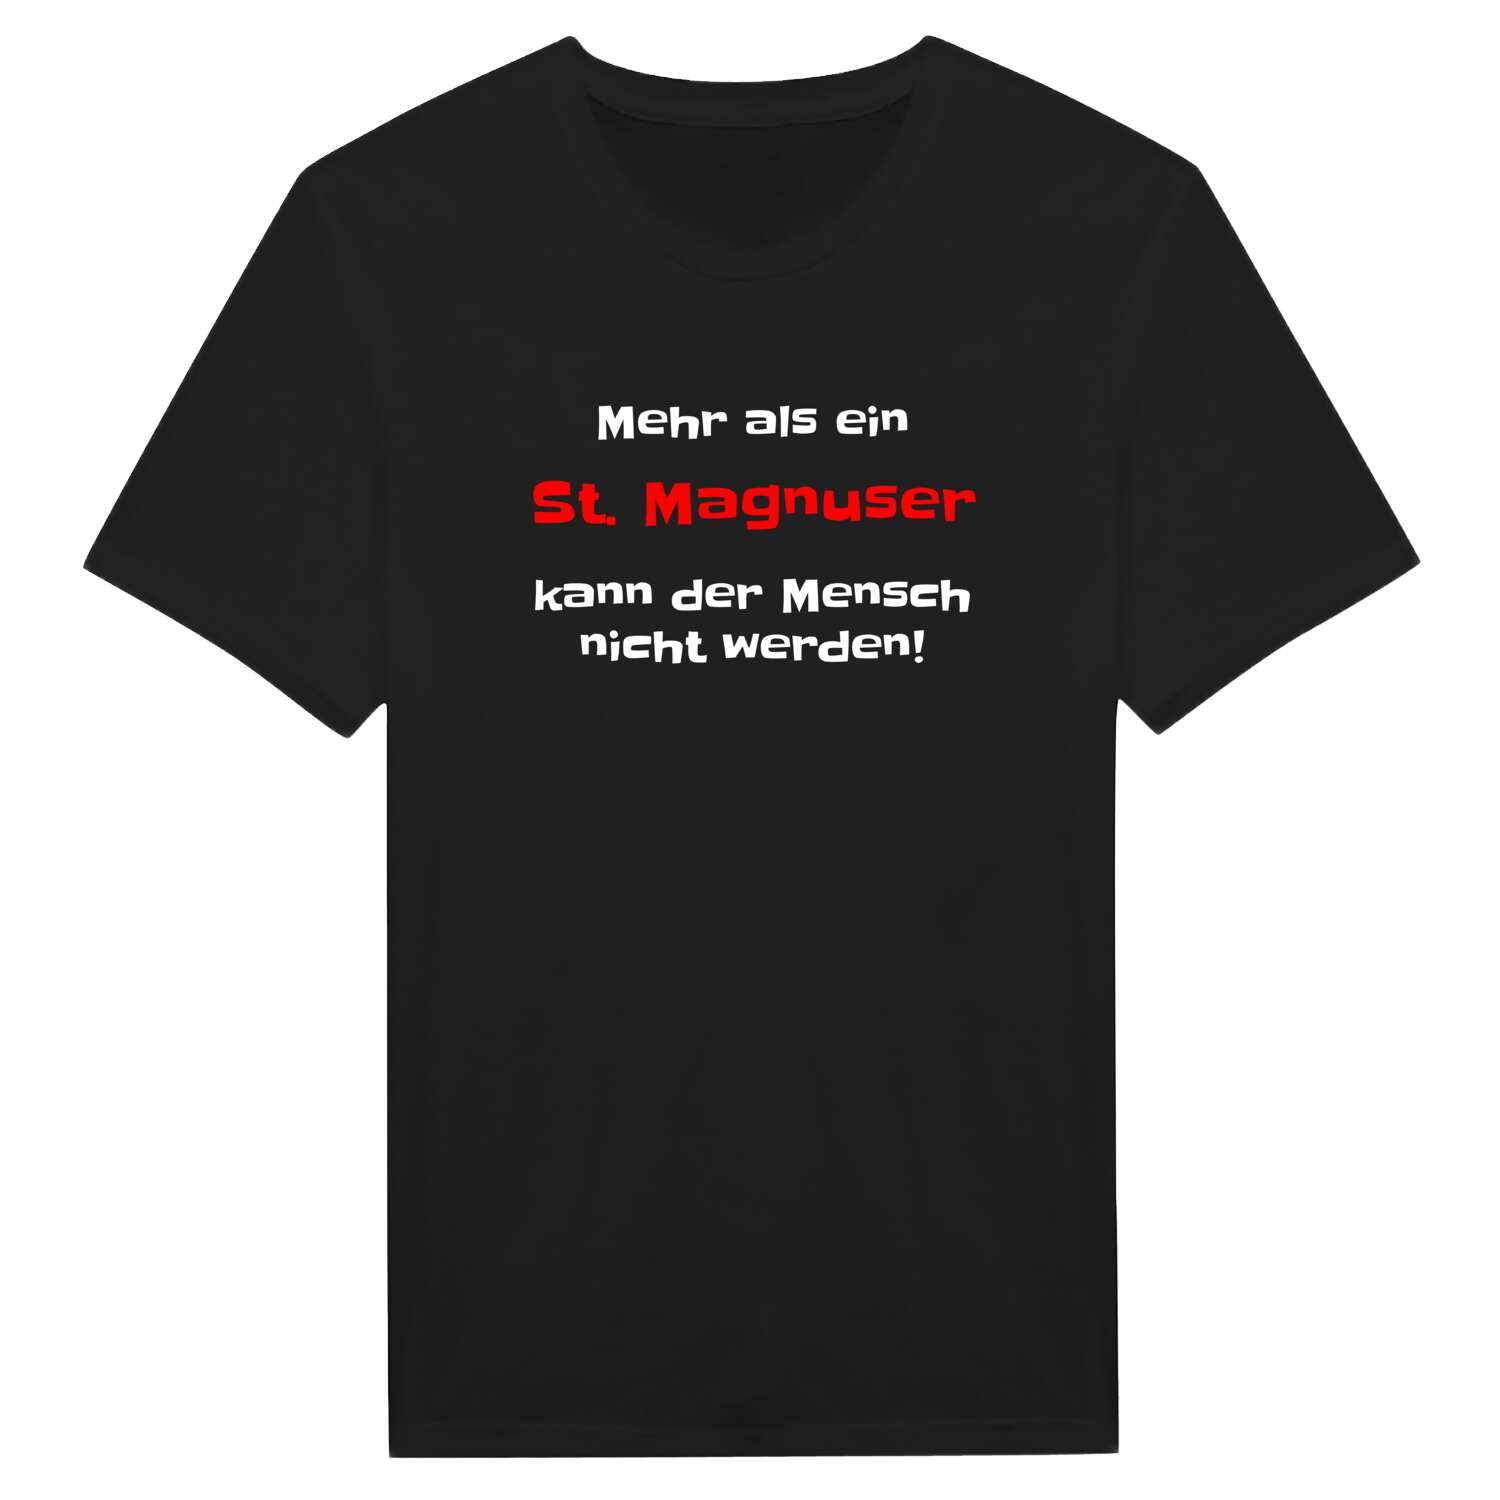 St. Magnus T-Shirt »Mehr als ein«